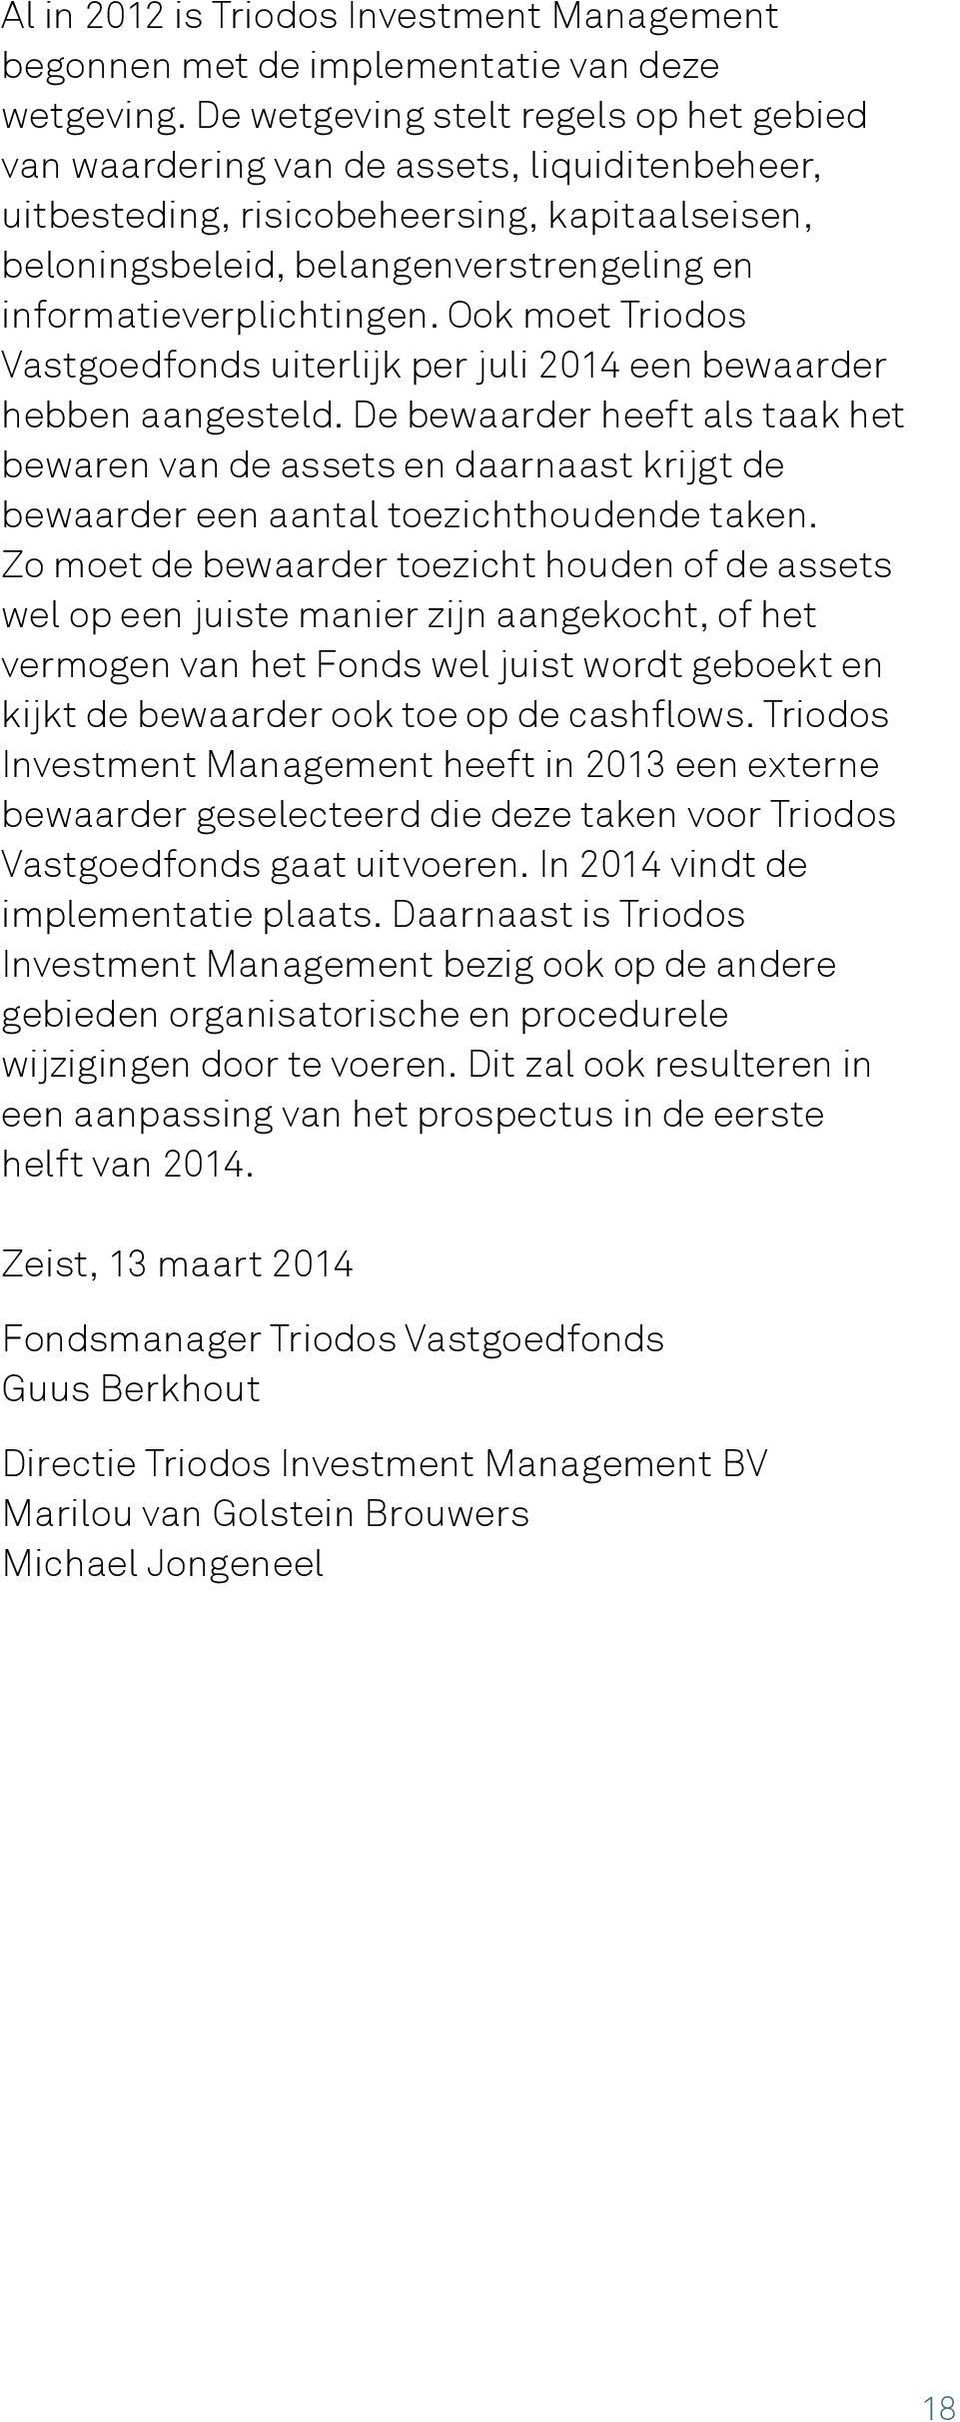 informatieverplichtingen. Ook moet Triodos Vastgoedfonds uiterlijk per juli 2014 een bewaarder hebben aangesteld.